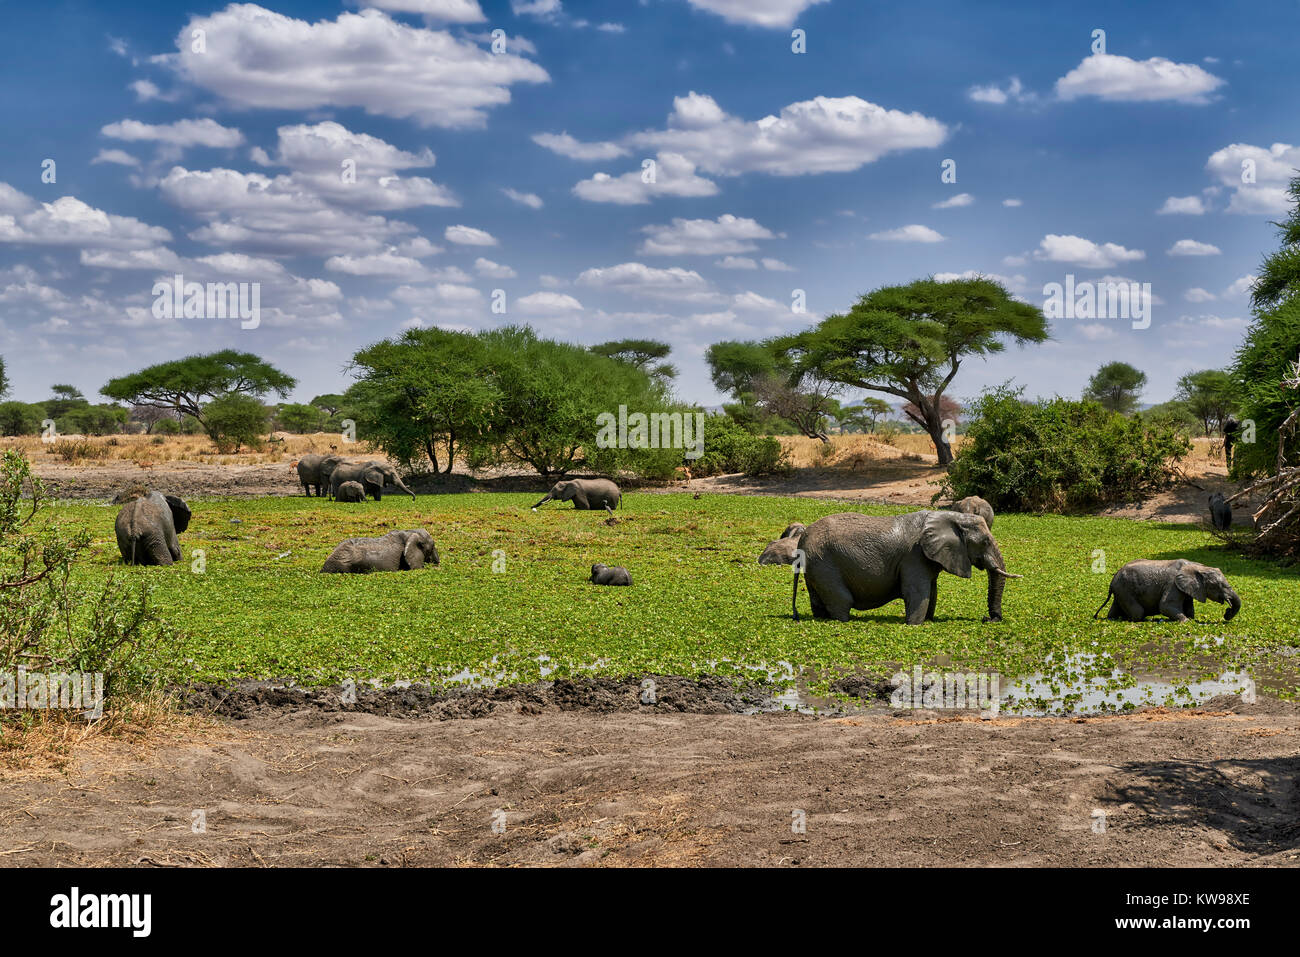 Bush africain des éléphants au waterhole, Loxodonta africana, dans le parc national de Tarangire, Tanzania, Africa Banque D'Images